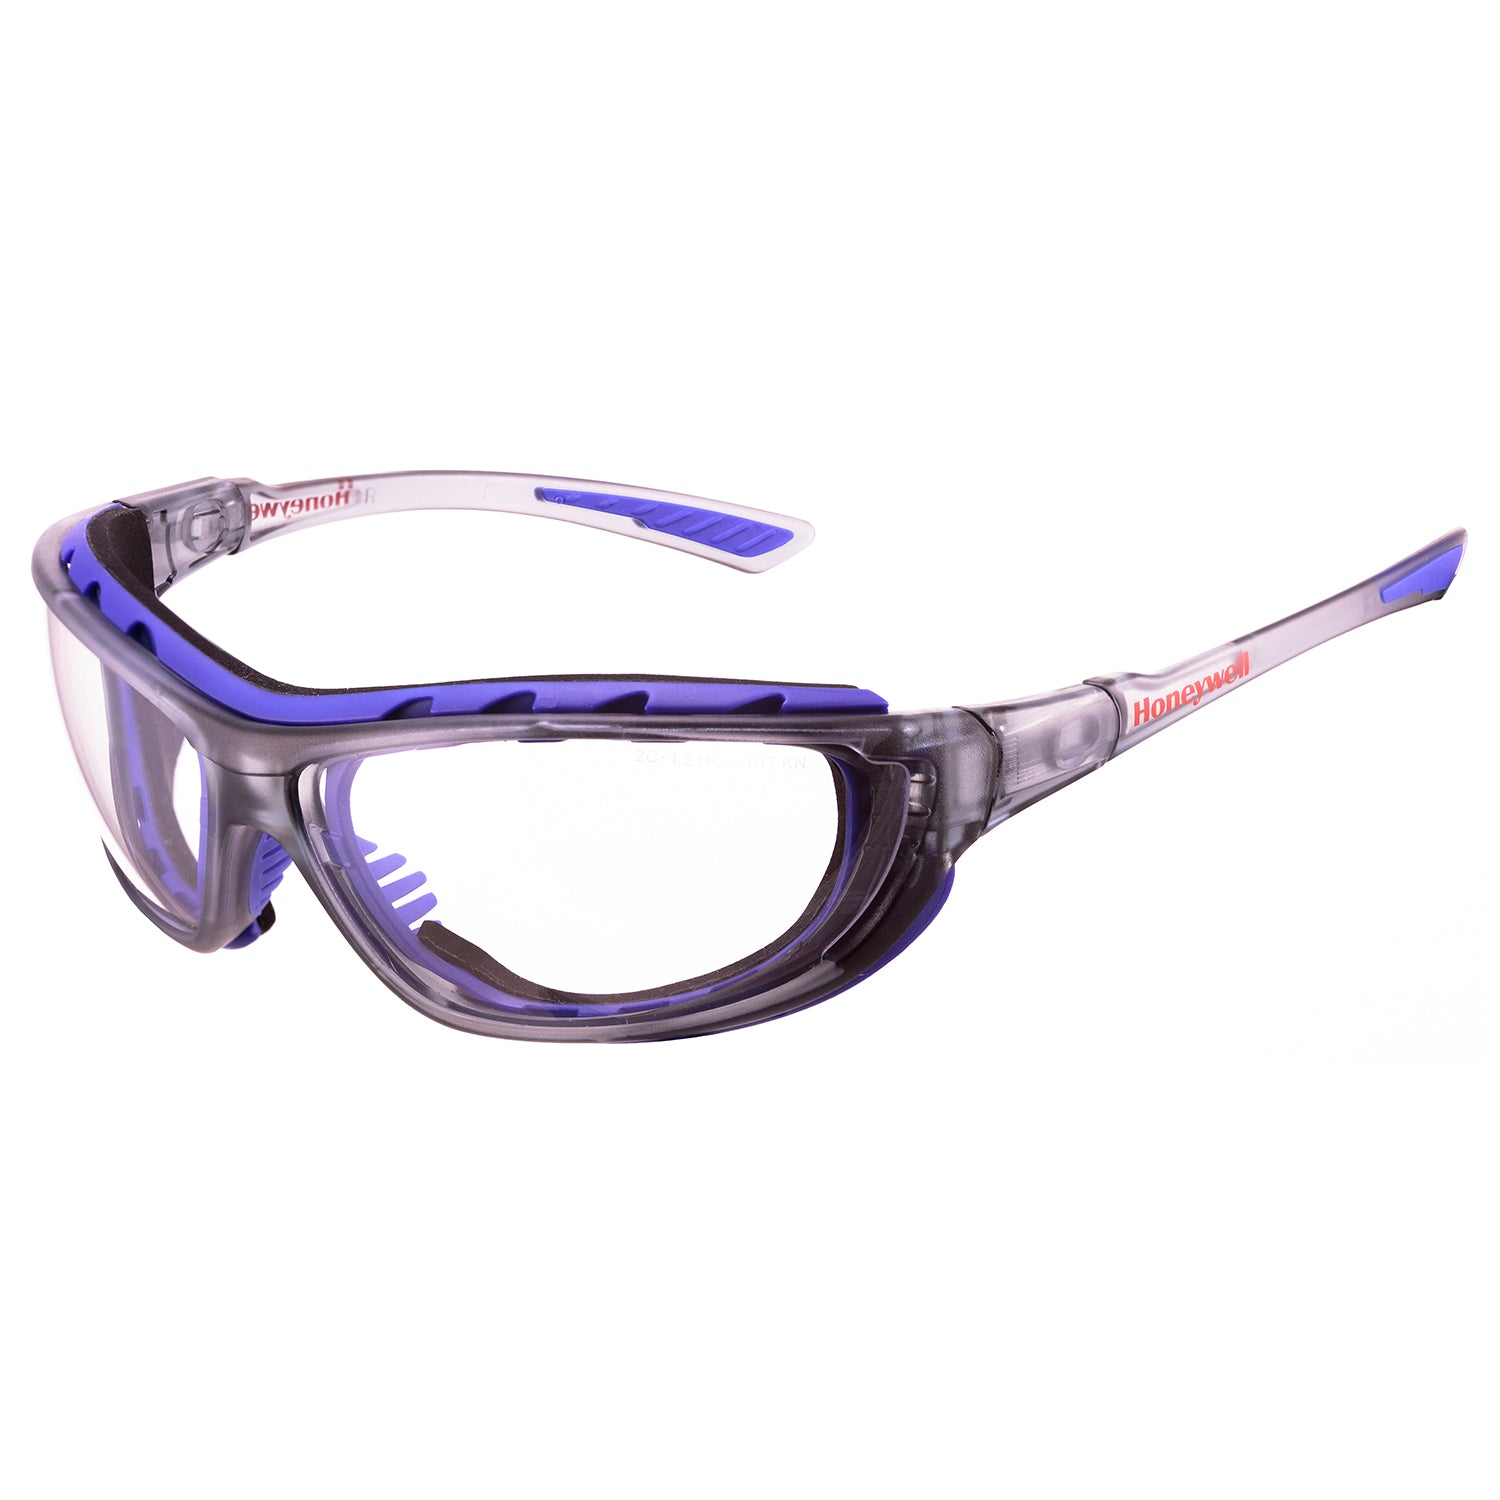 Honeywell Safety Glasses SP1000 2G, Black Frame, Clear Lens